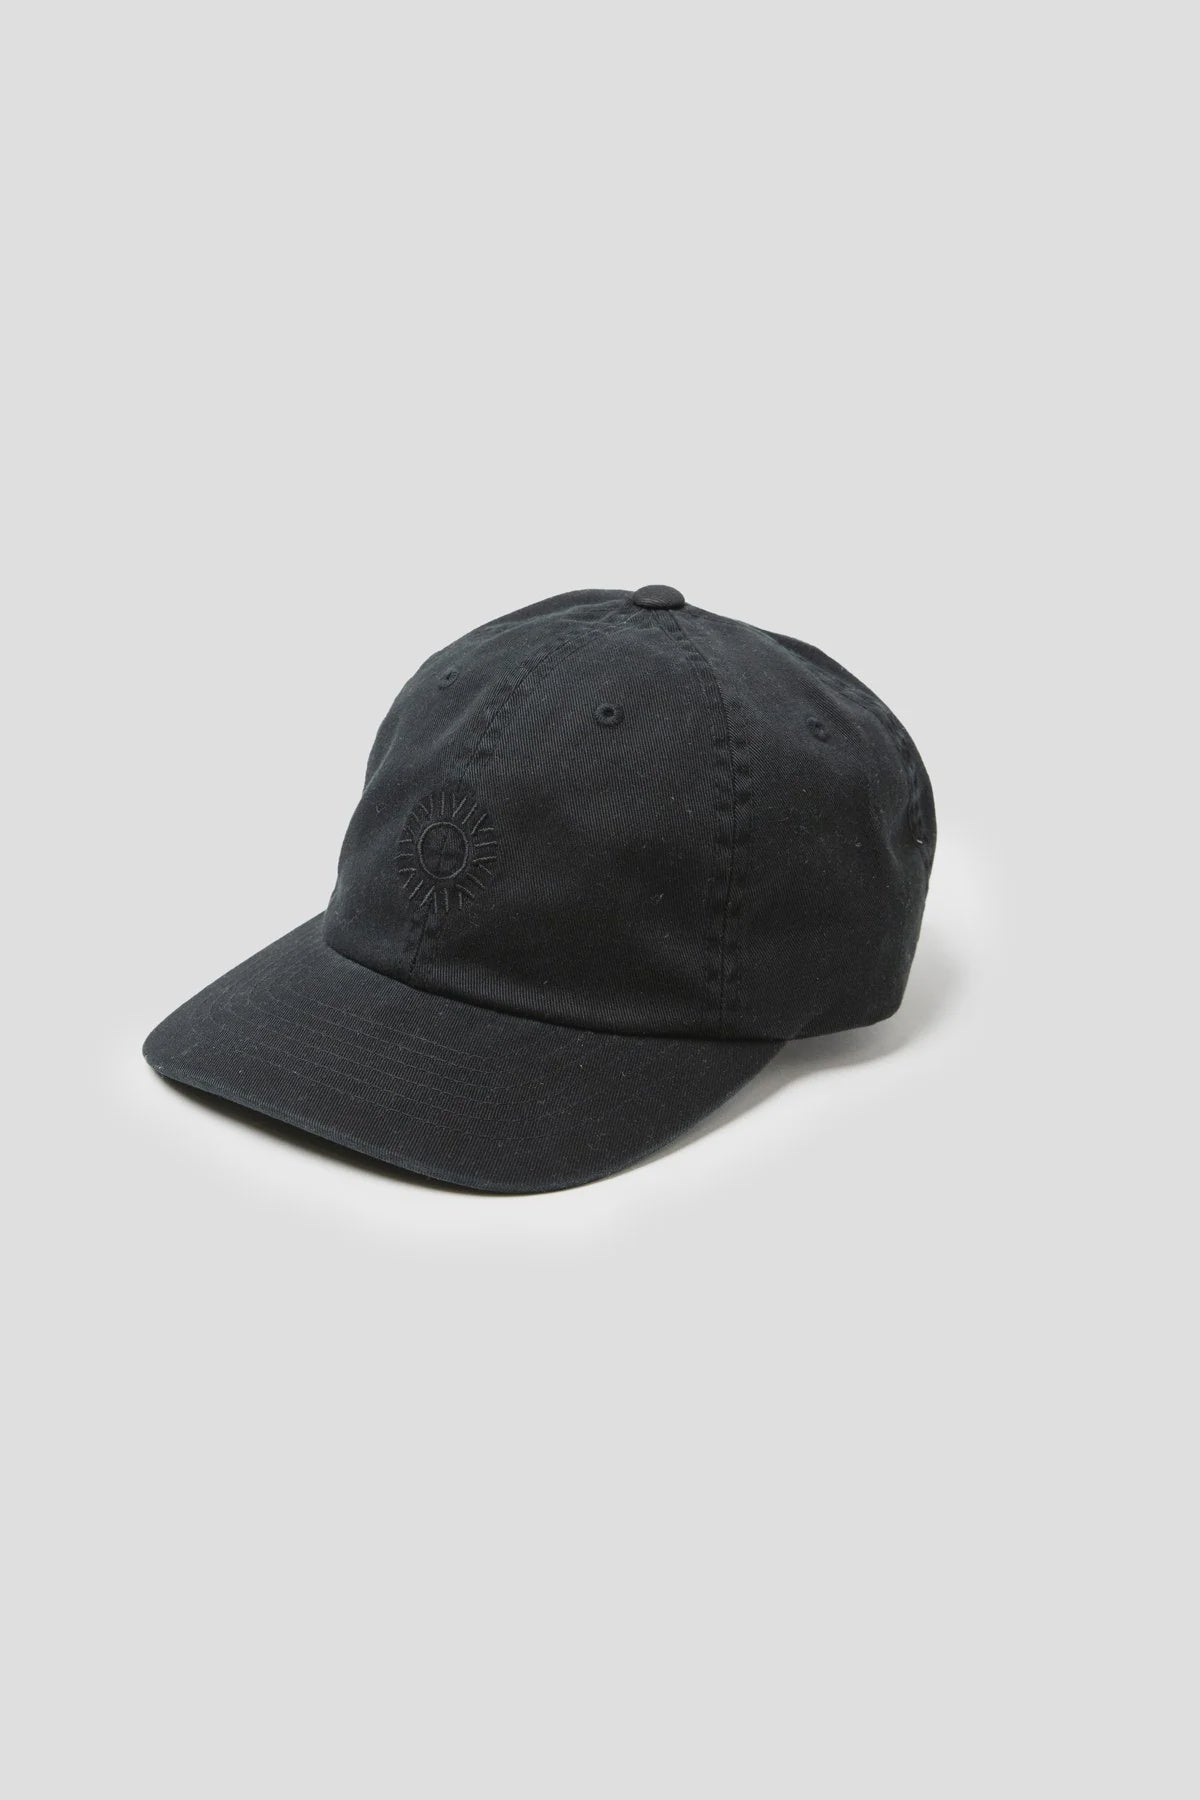 CLASSIC CAP - BLACK